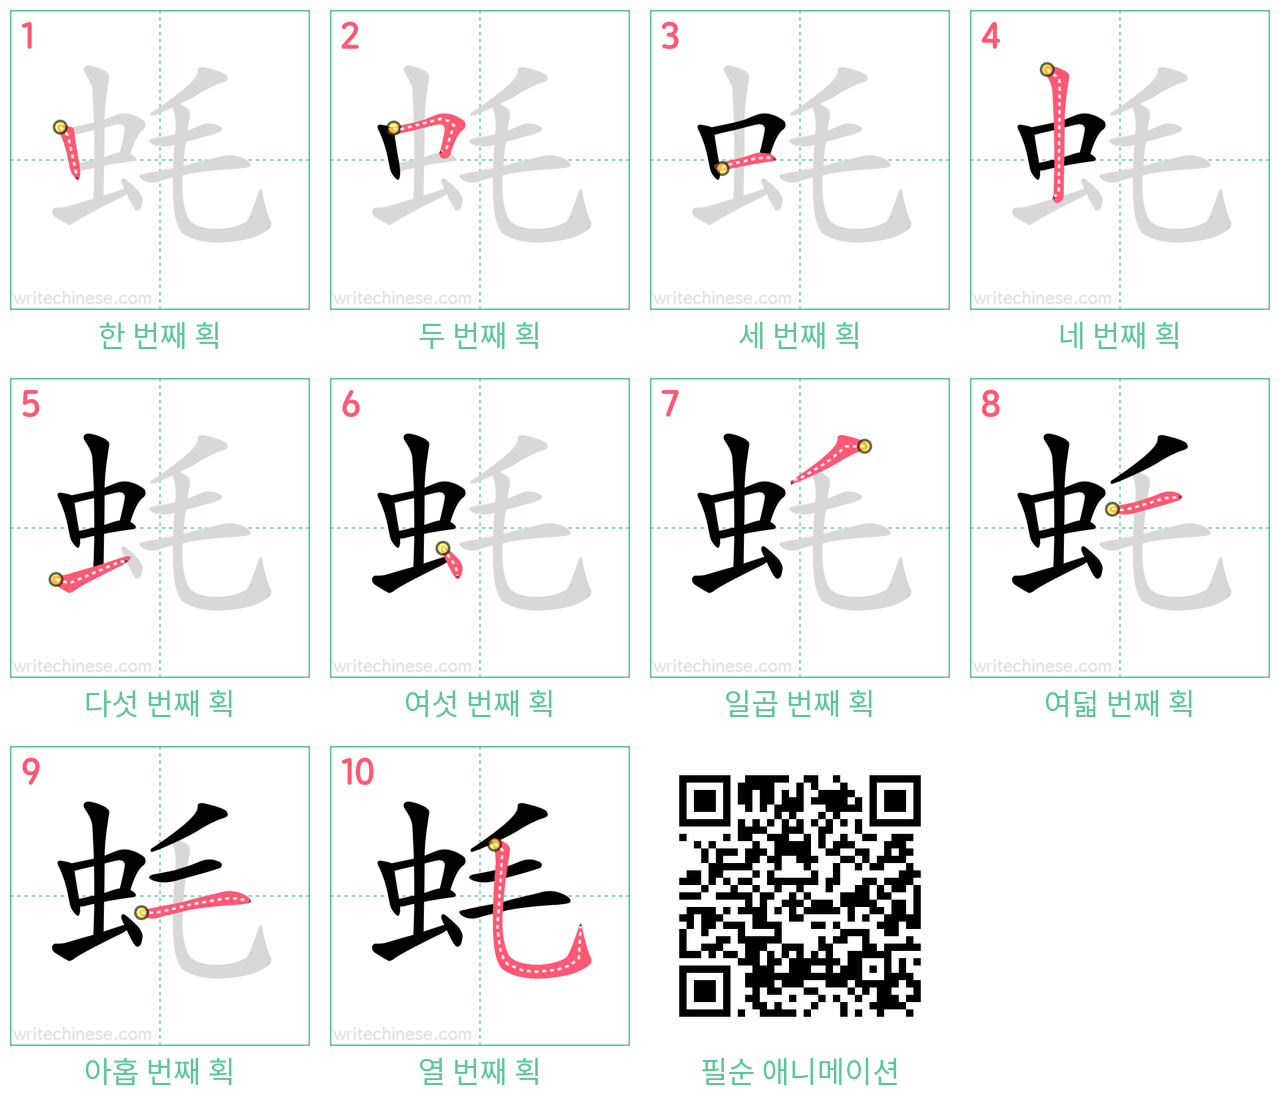 蚝 step-by-step stroke order diagrams